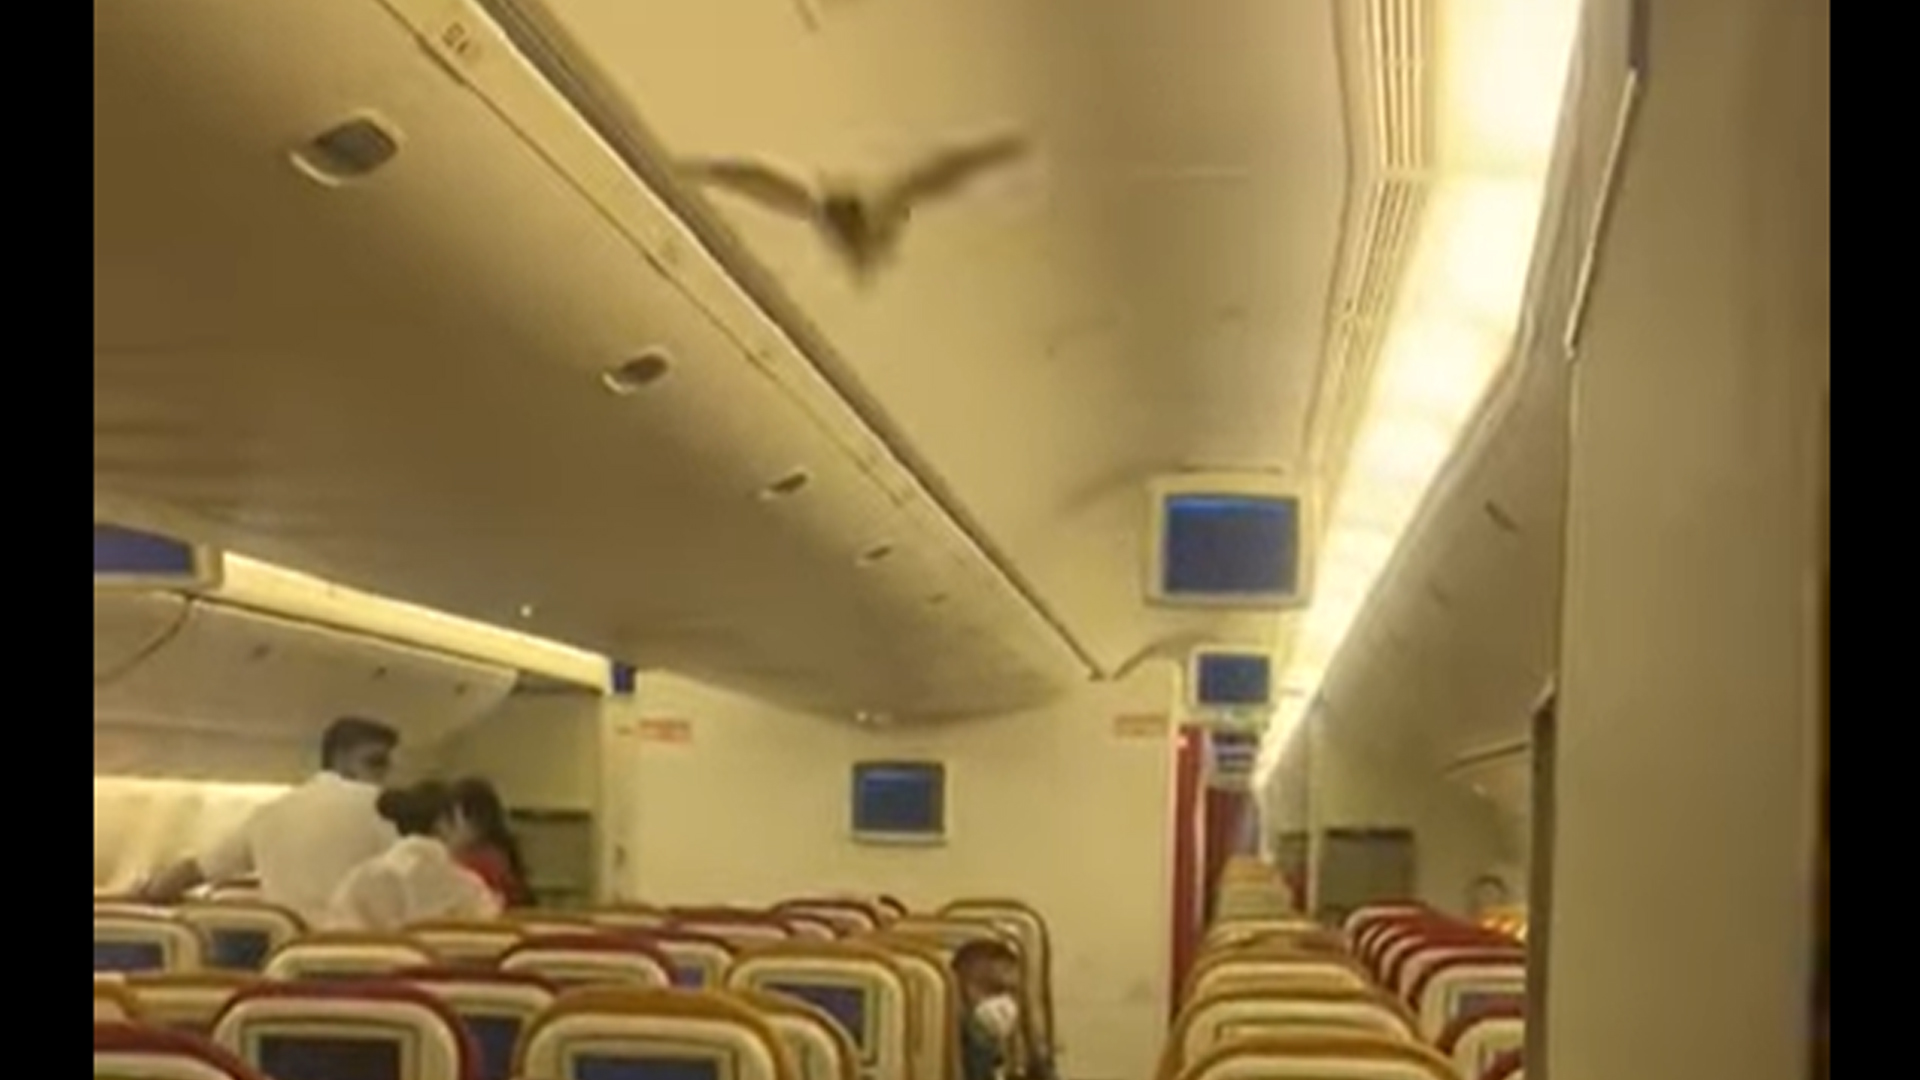 Visszafordították Delhibe a New Yorkba tartó járatot, mert az utastérben repkedett egy denevér